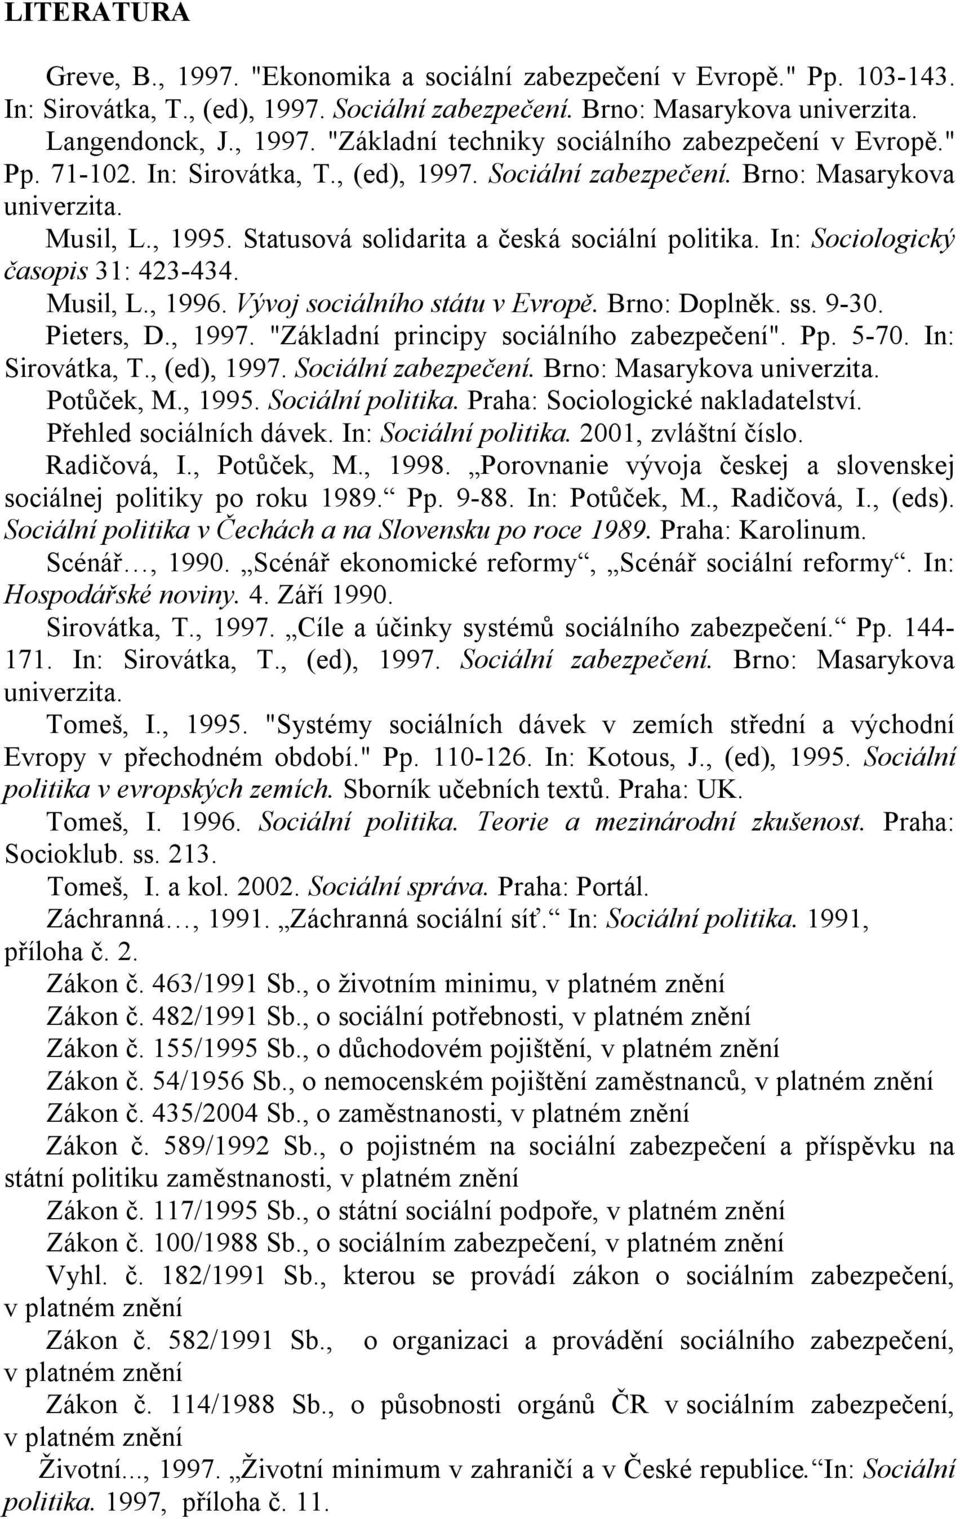 Musil, L., 1996. Vývoj sociálního státu v Evropě. Brno: Doplněk. ss. 9-30. Pieters, D., 1997. "Základní principy sociálního zabezpečení". Pp. 5-70. In: Sirovátka, T., (ed), 1997. Sociální zabezpečení.